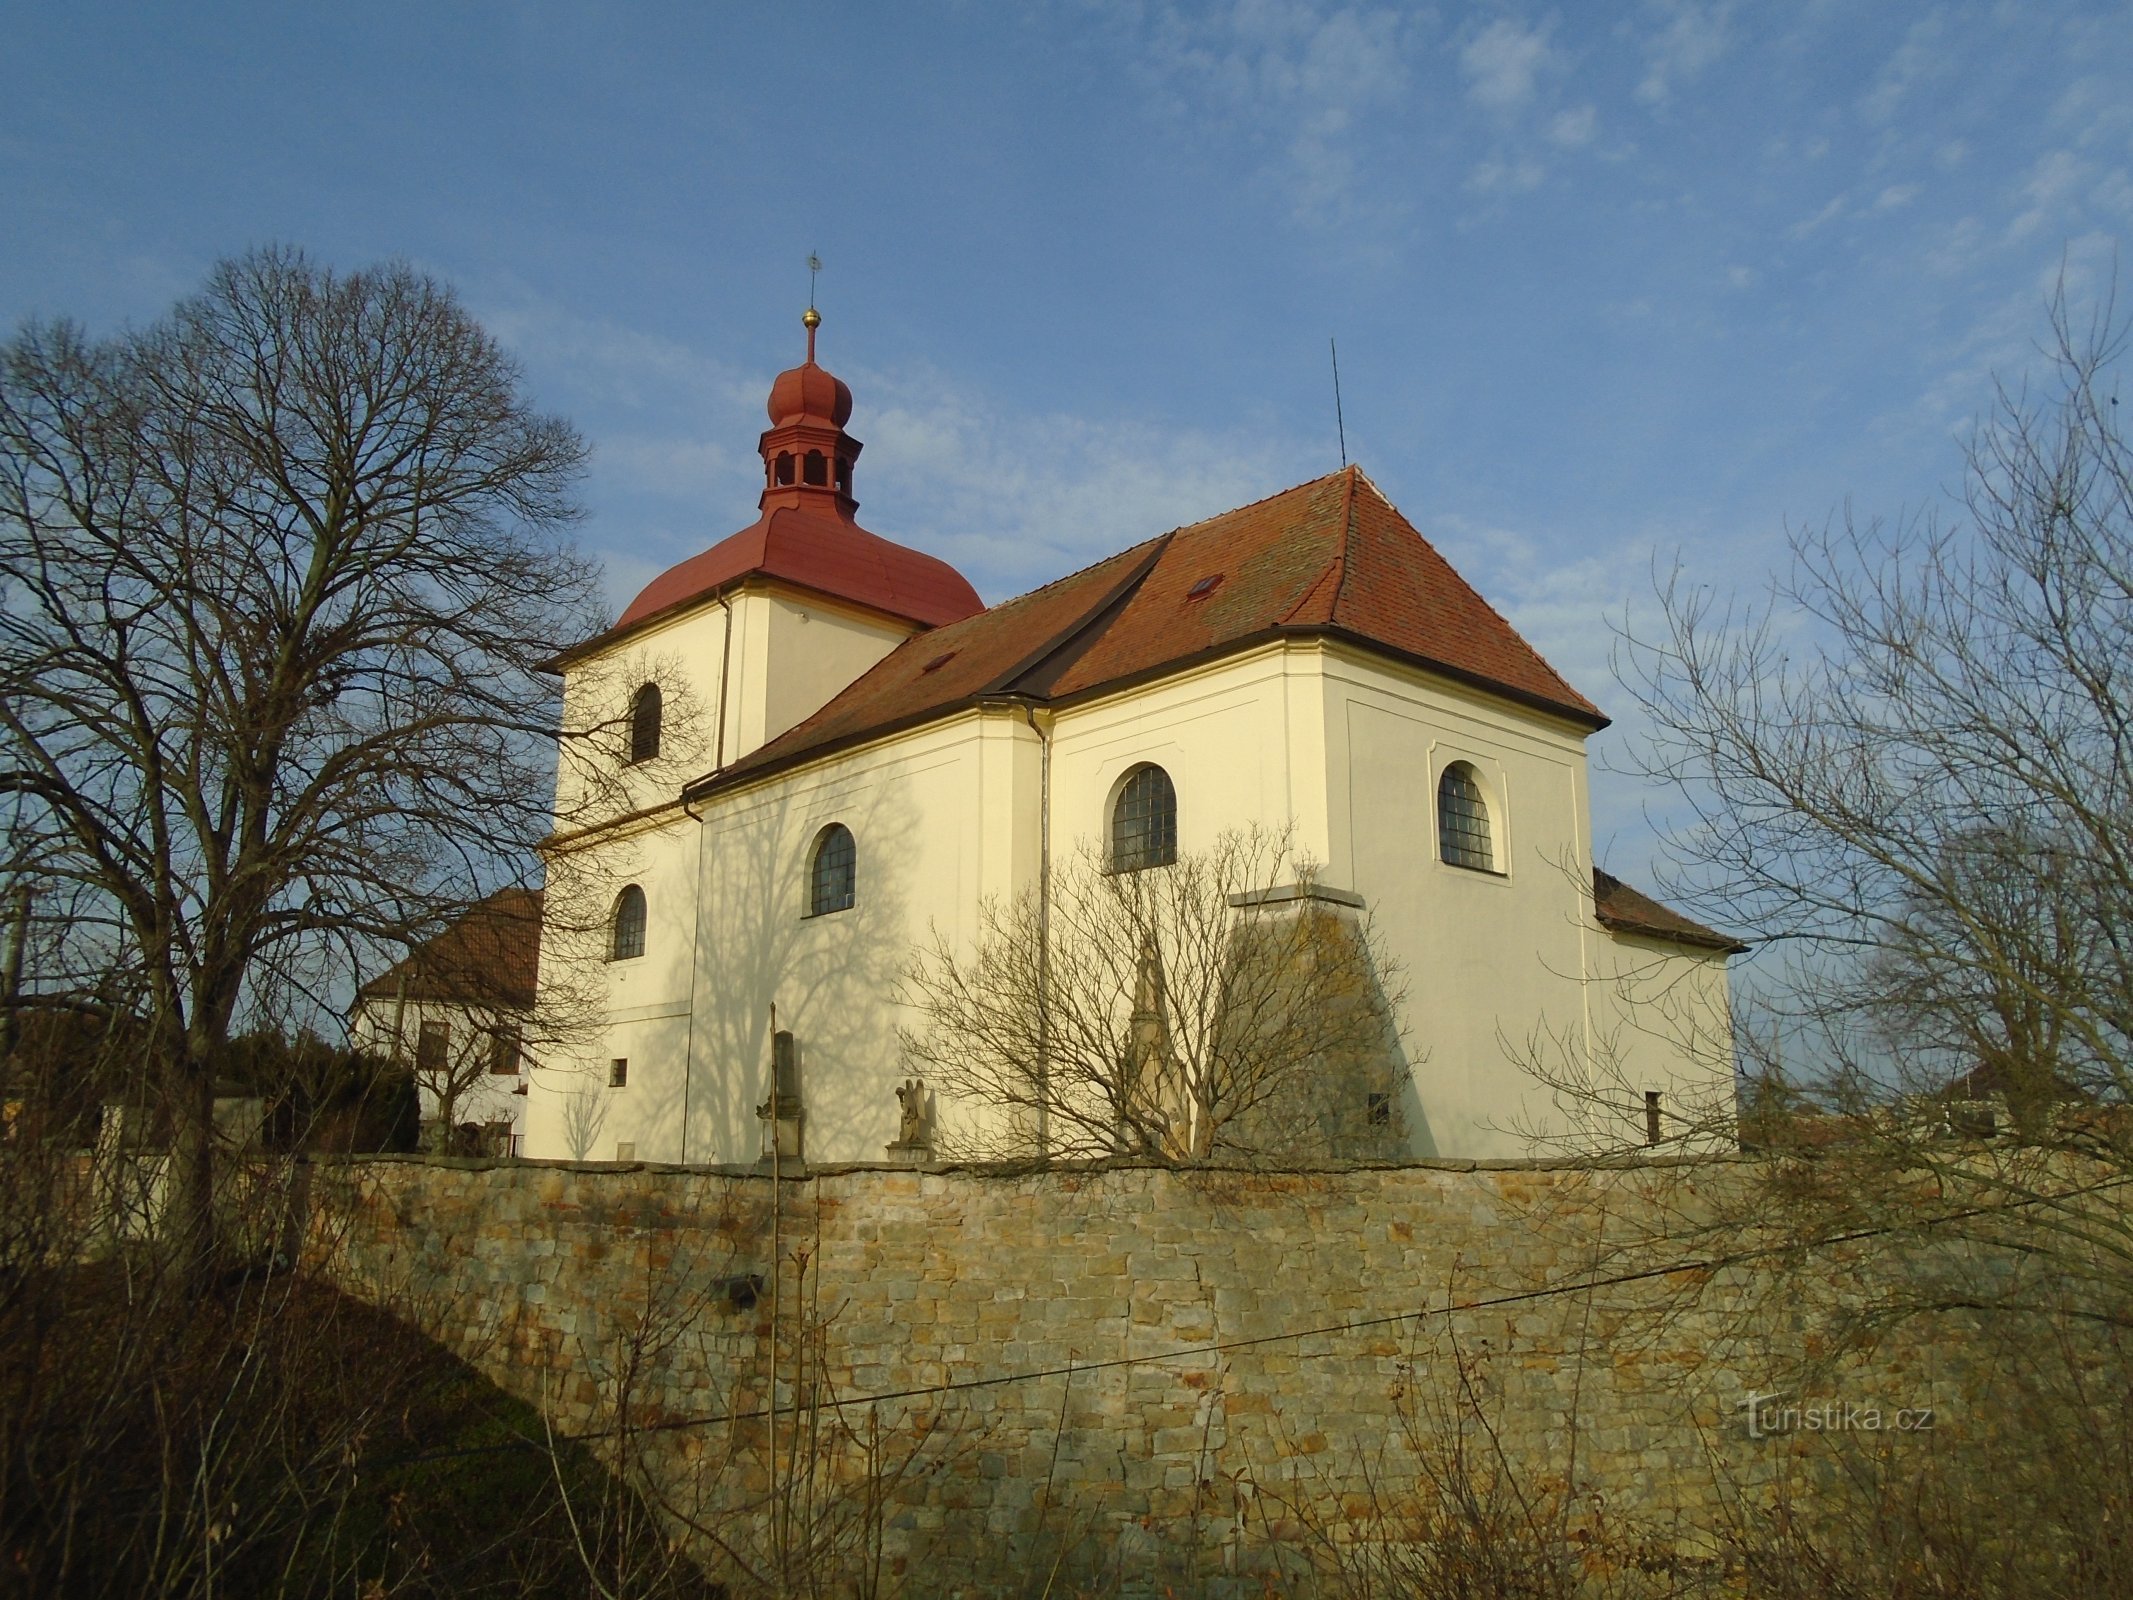 Церква св. Станіслав, єпископ і мученик (Сендражіце)